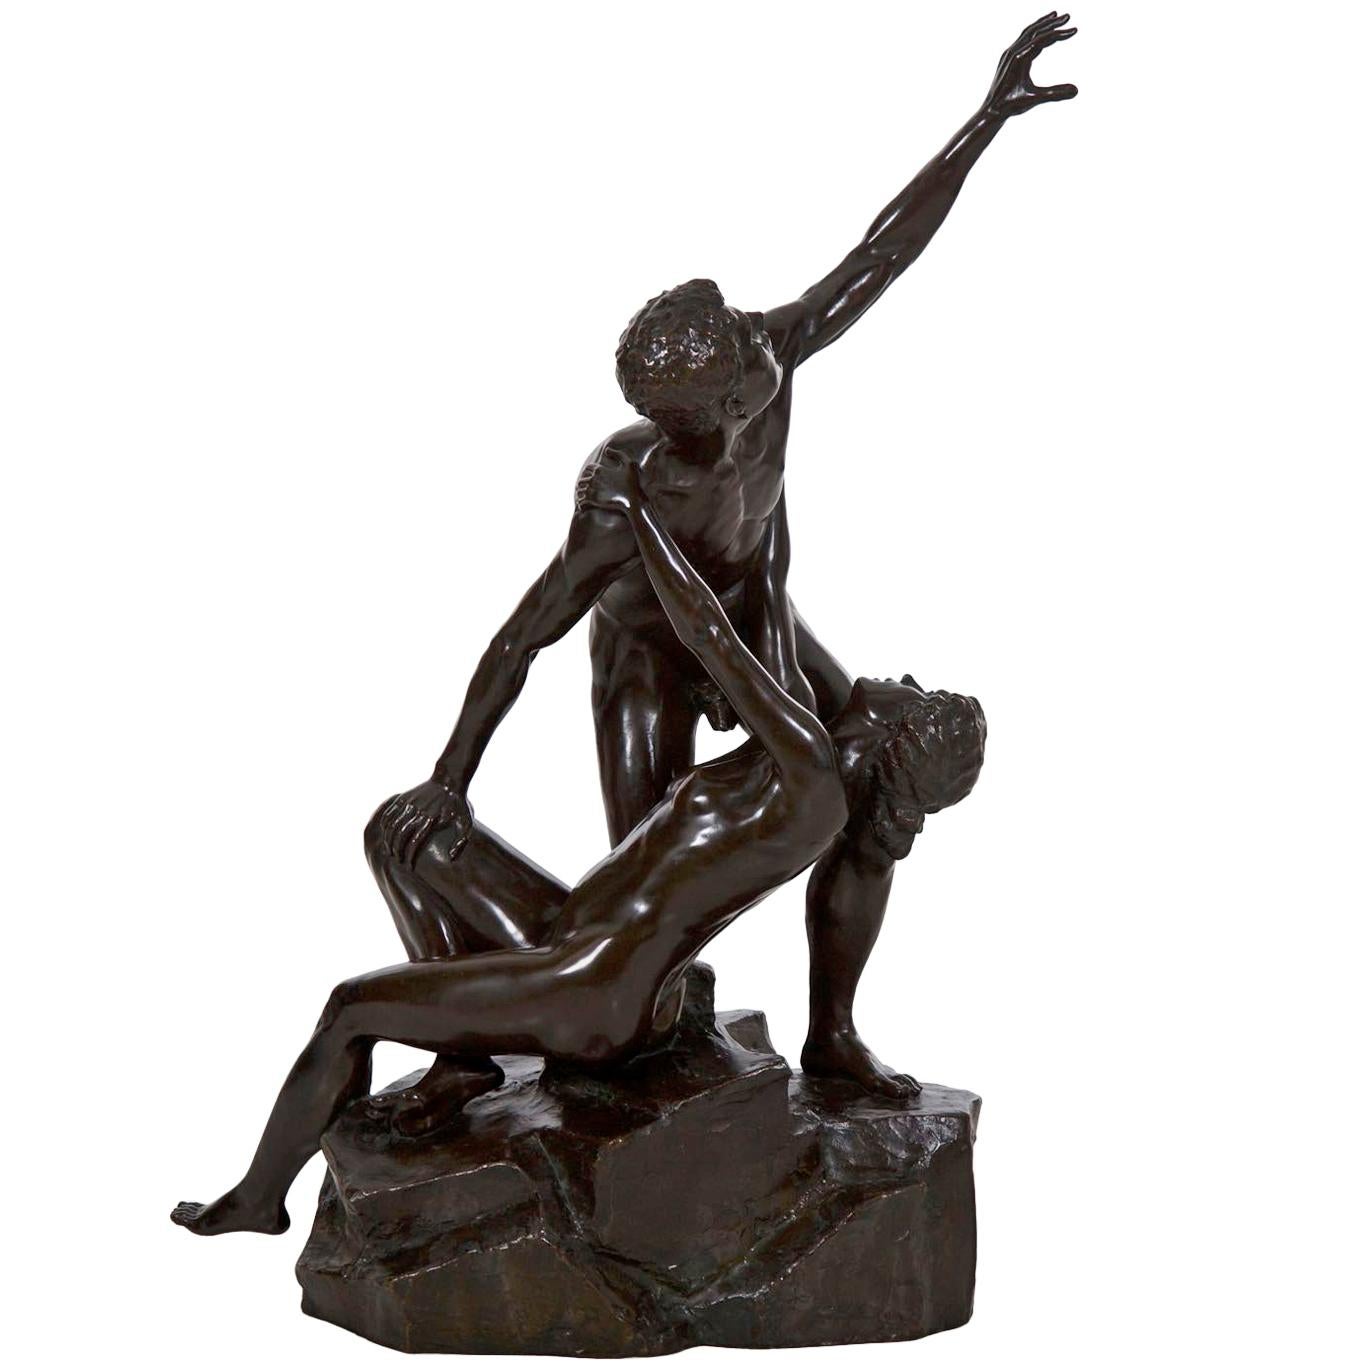 Antique Art Deco Bronze Sculpture by Else Fürst, (German, 1878-1943)